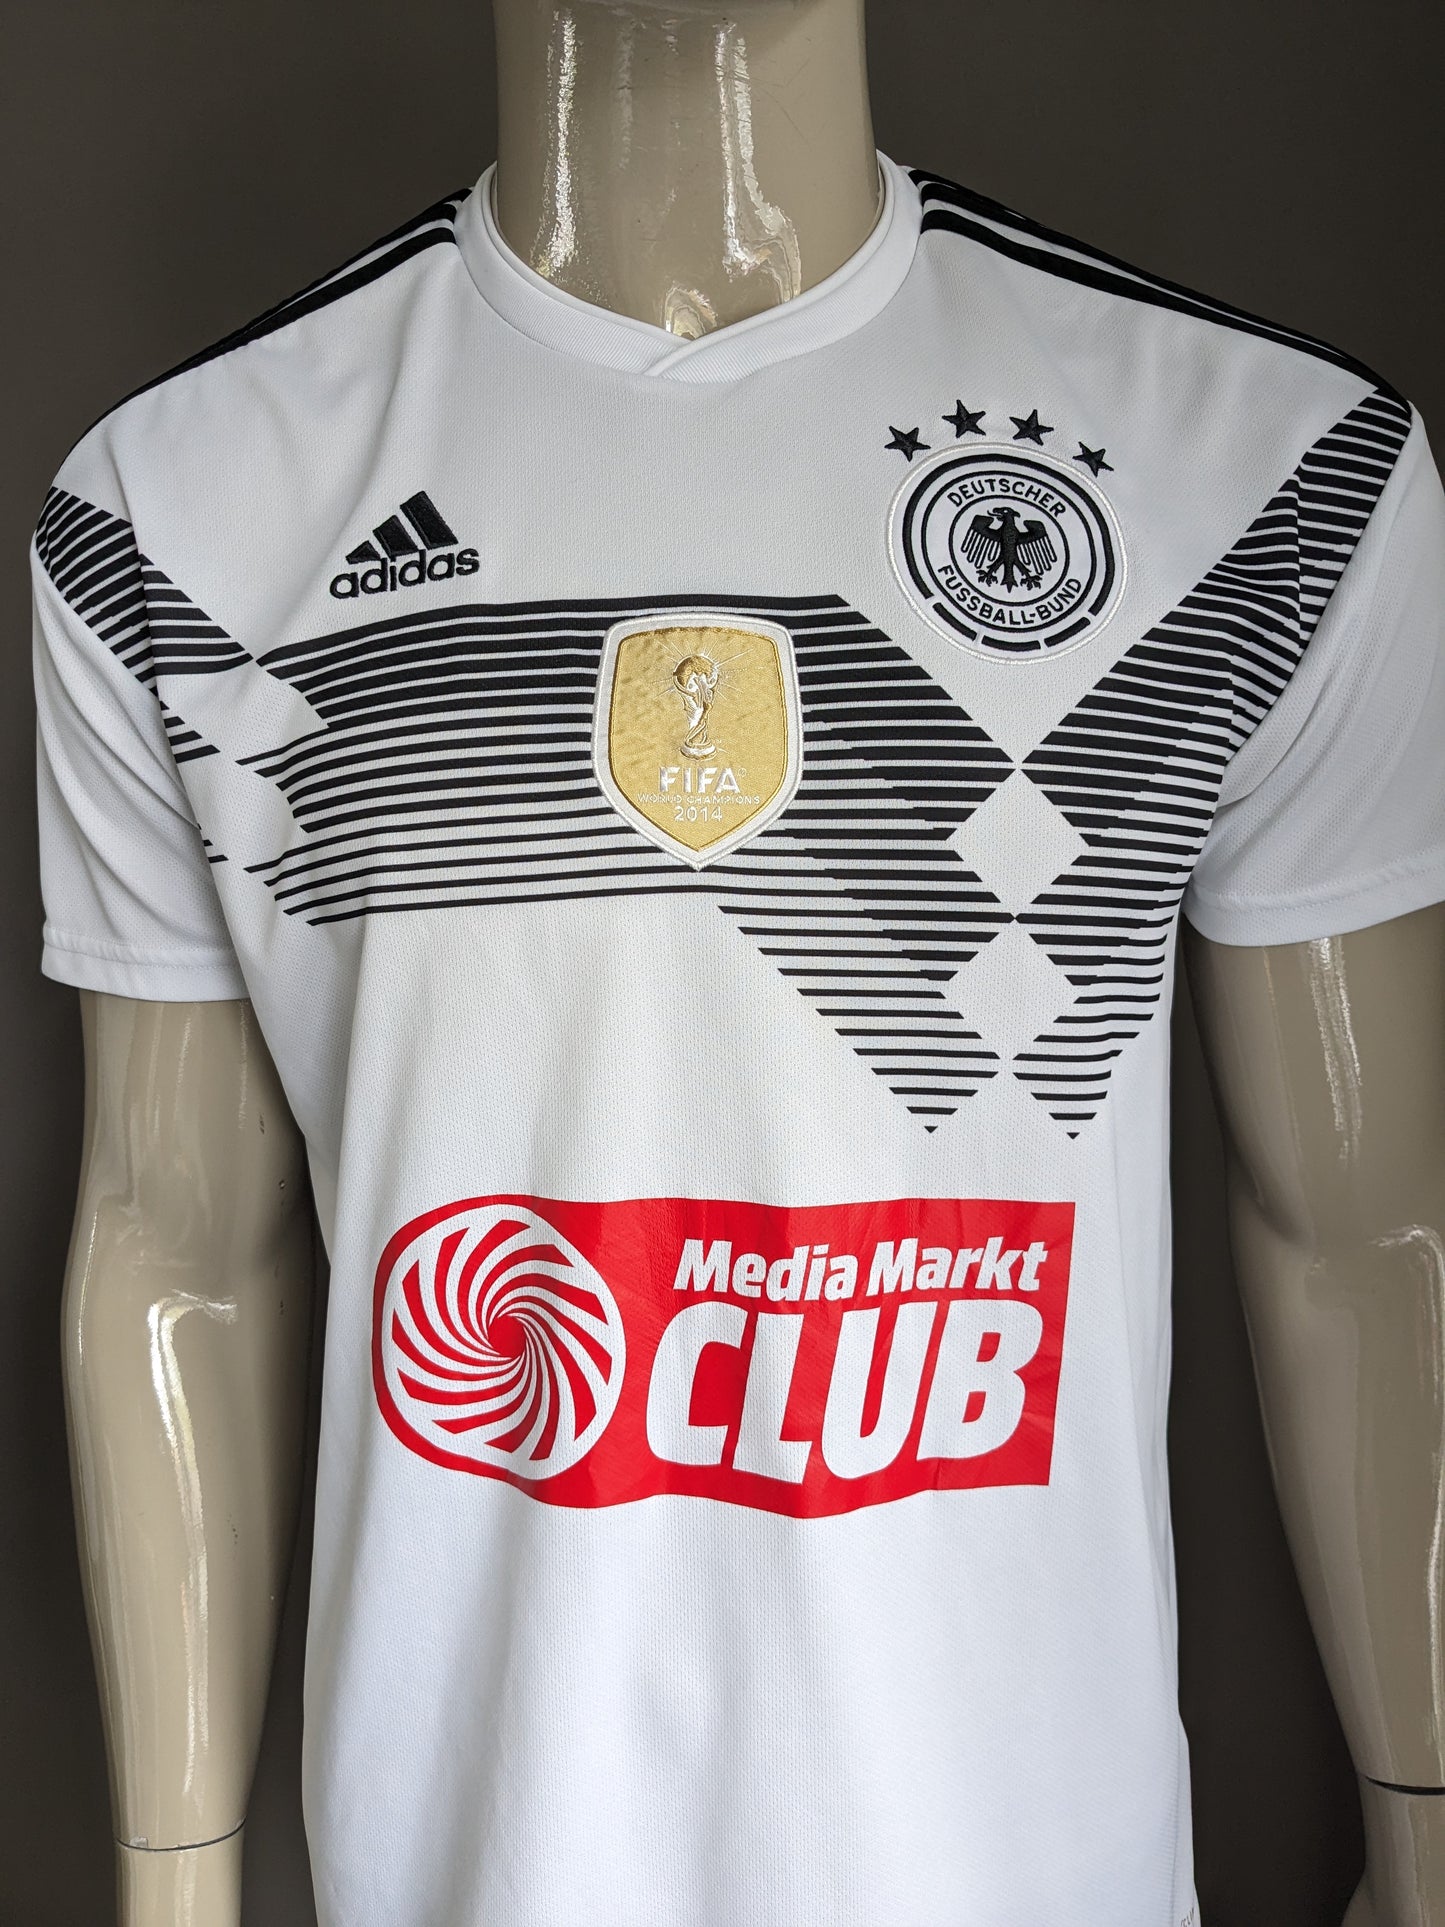 Adidas Deutscher Fussball Bund Shirt. White black colored. FIFA 2014. Size M.